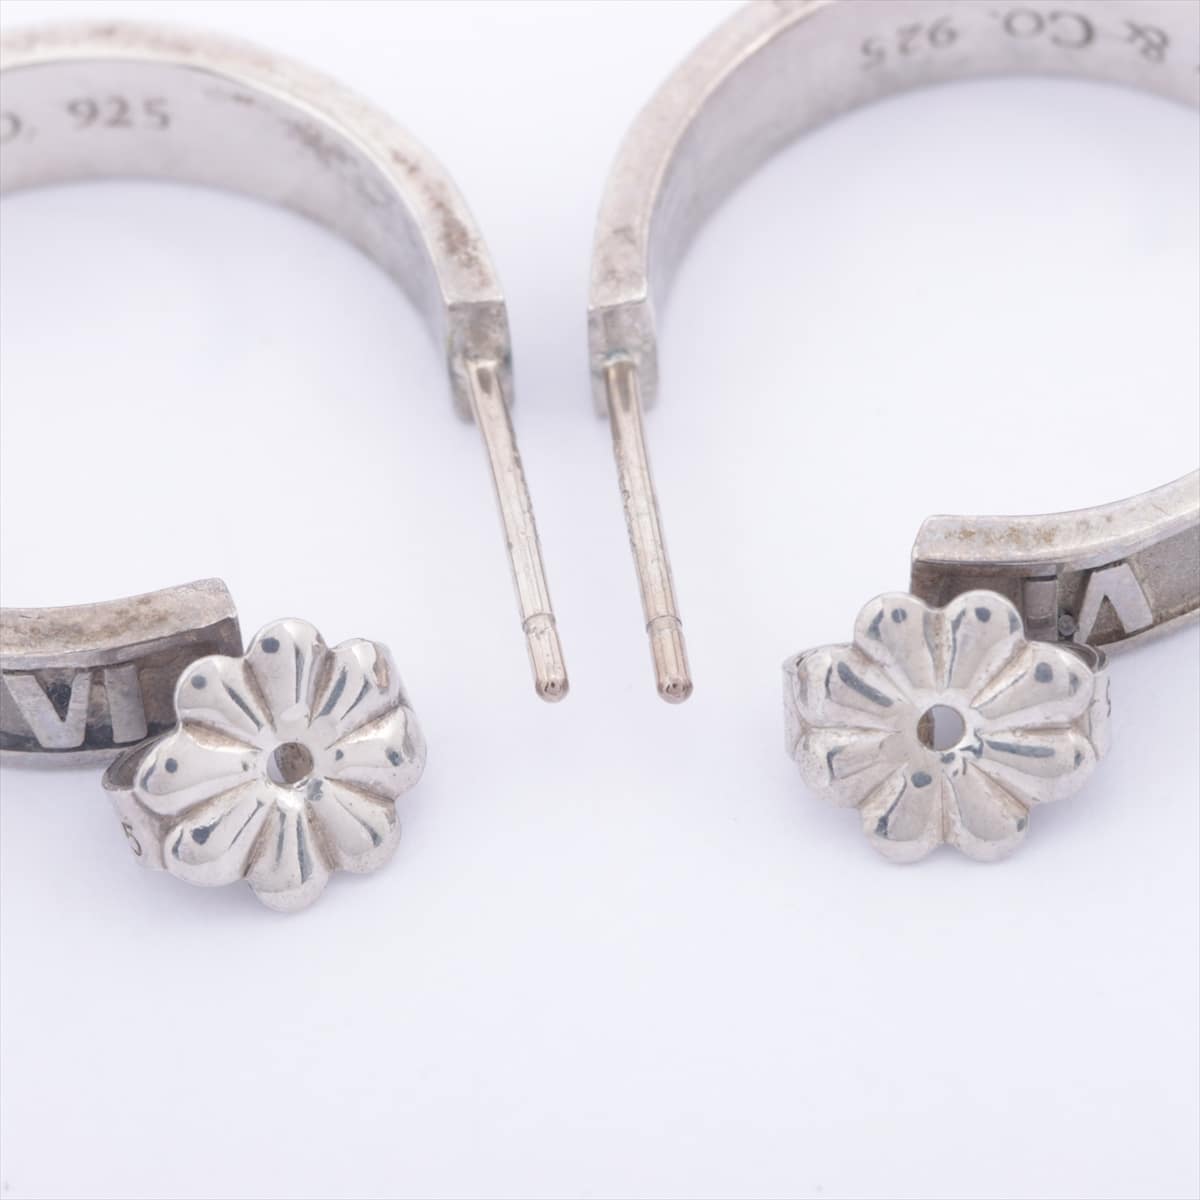 Tiffany Atlas Piercing jewelry (for both ears) 925 Silver